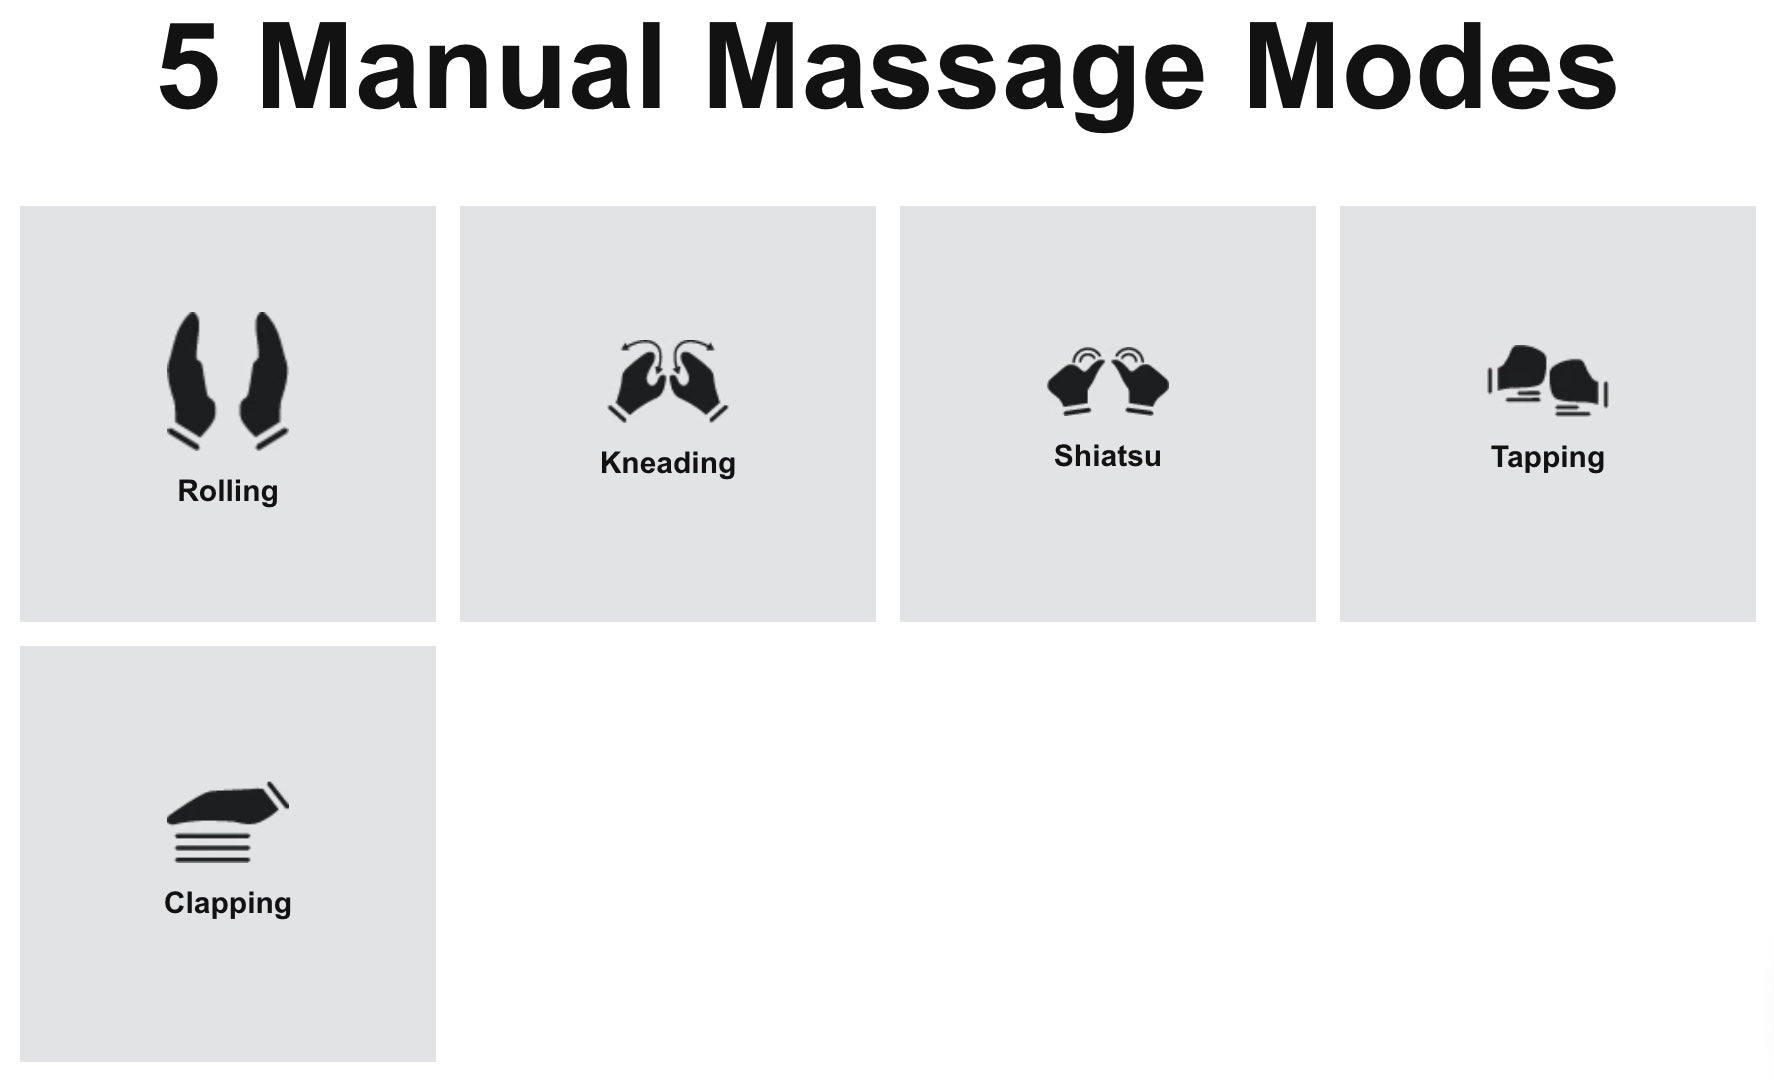 5 Manual Massage Modes